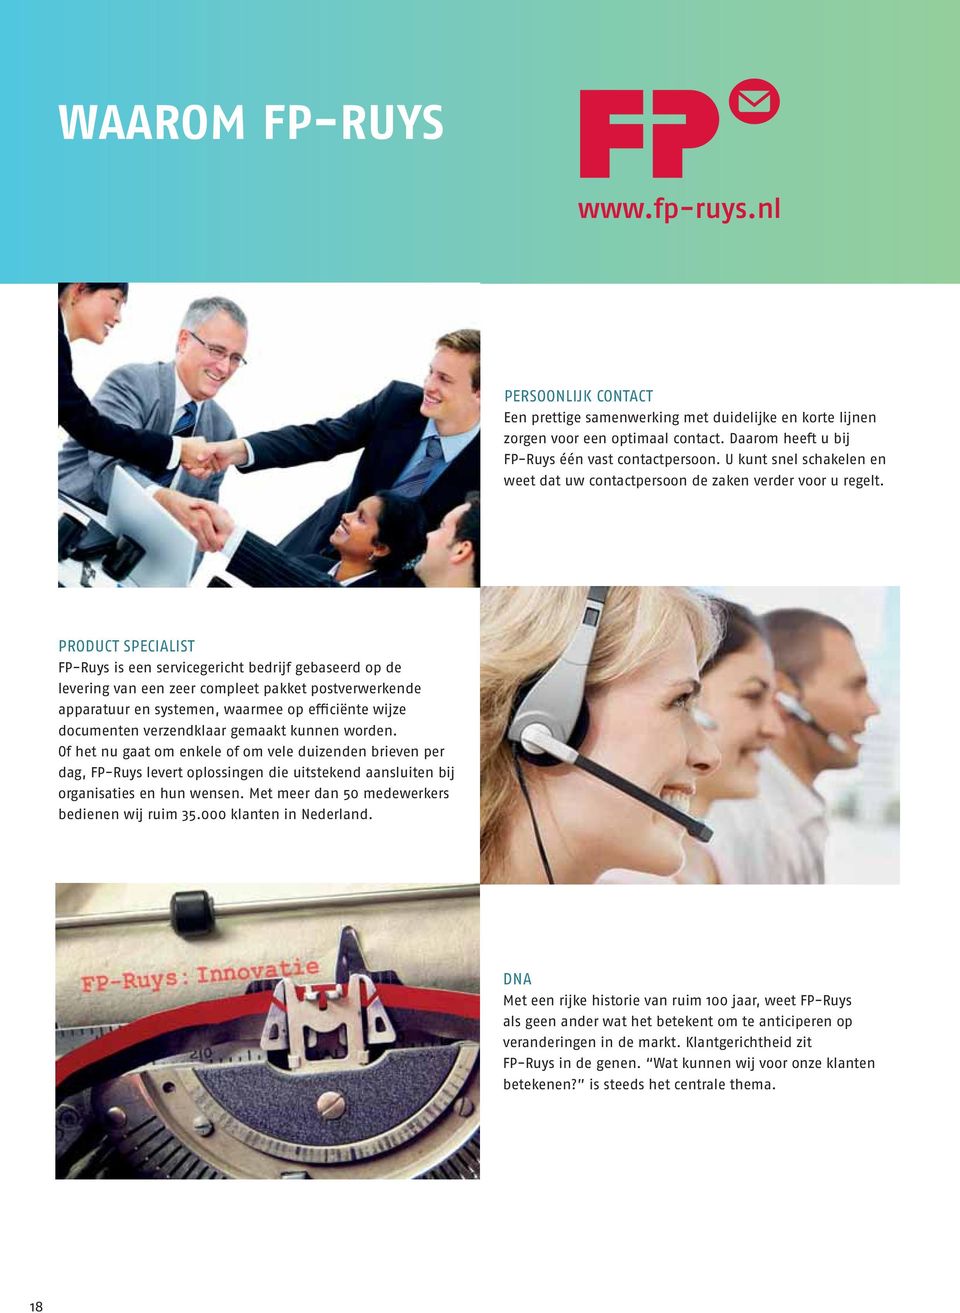 PRODUCT SPECIALIST FP-Ruys is een servicegericht bedrijf gebaseerd op de levering van een zeer compleet pakket postverwerkende apparatuur en systemen, waarmee op efficiënte wijze documenten